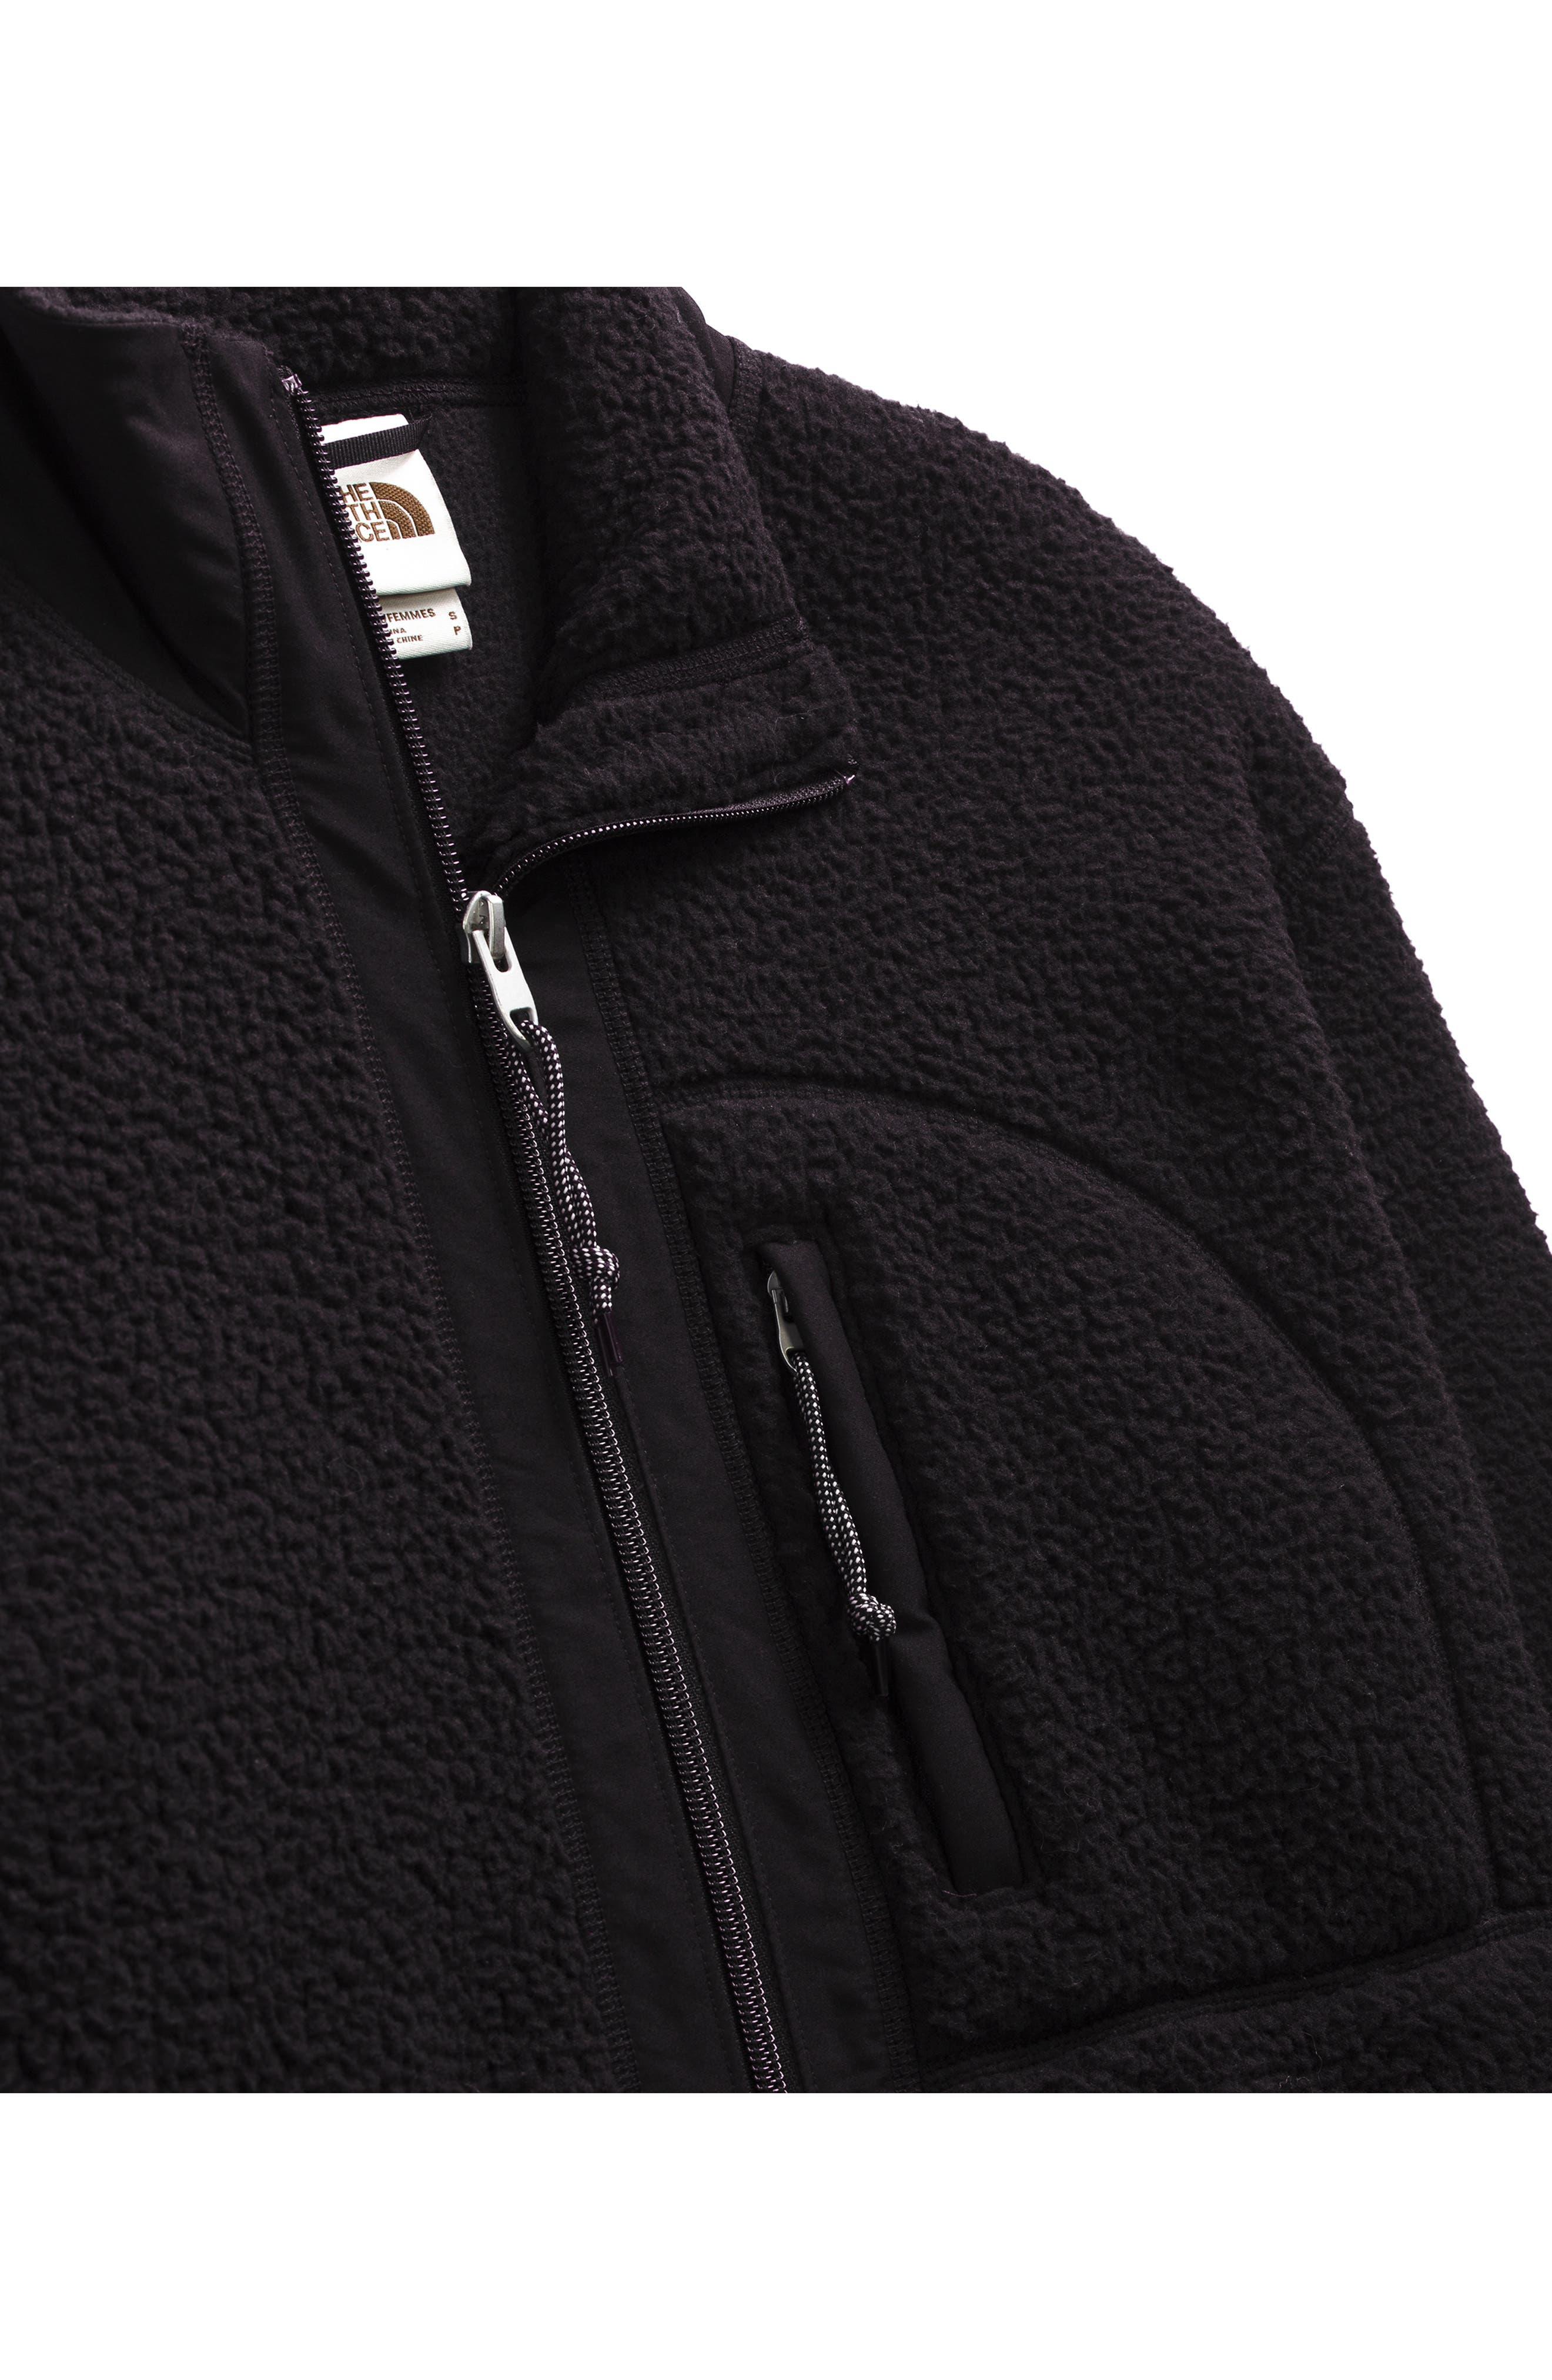 The North Face Cragmont Fleece Coat in Black